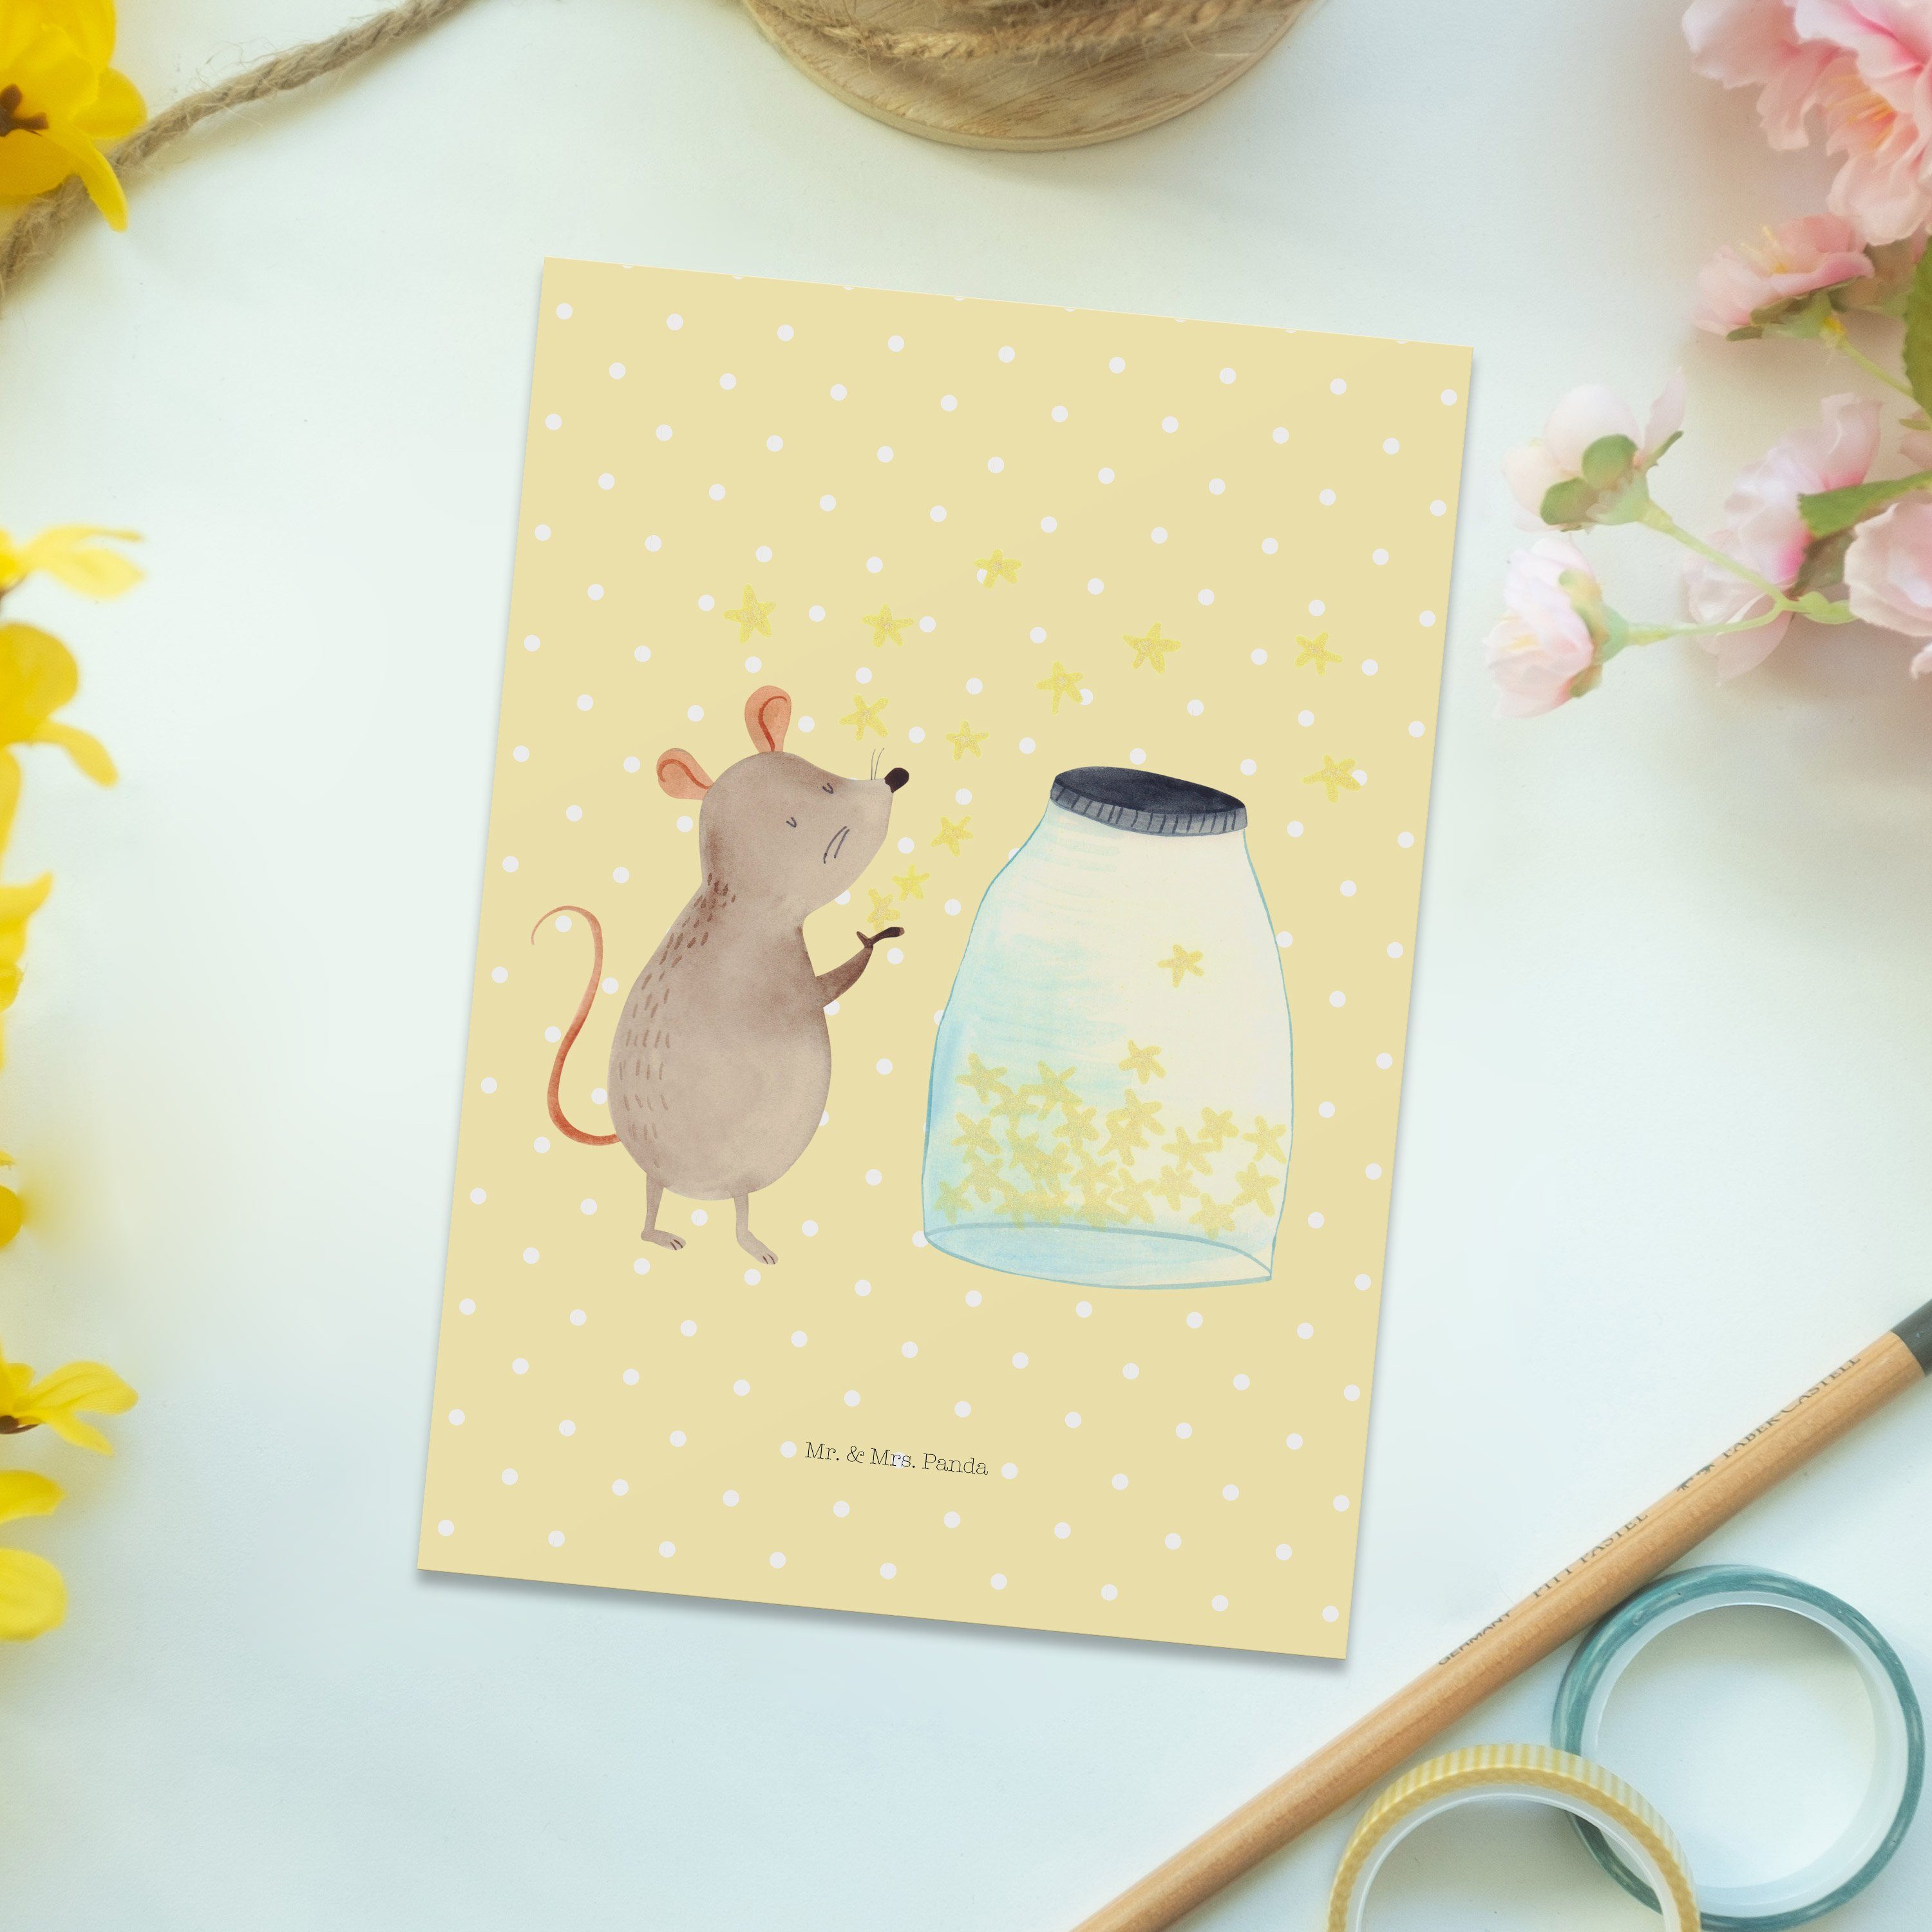 Mr. & - Dank Wunsch, Maus Pastell Gelb Tiere, - Postkarte Mrs. Sterne Panda Einladung, Geschenk